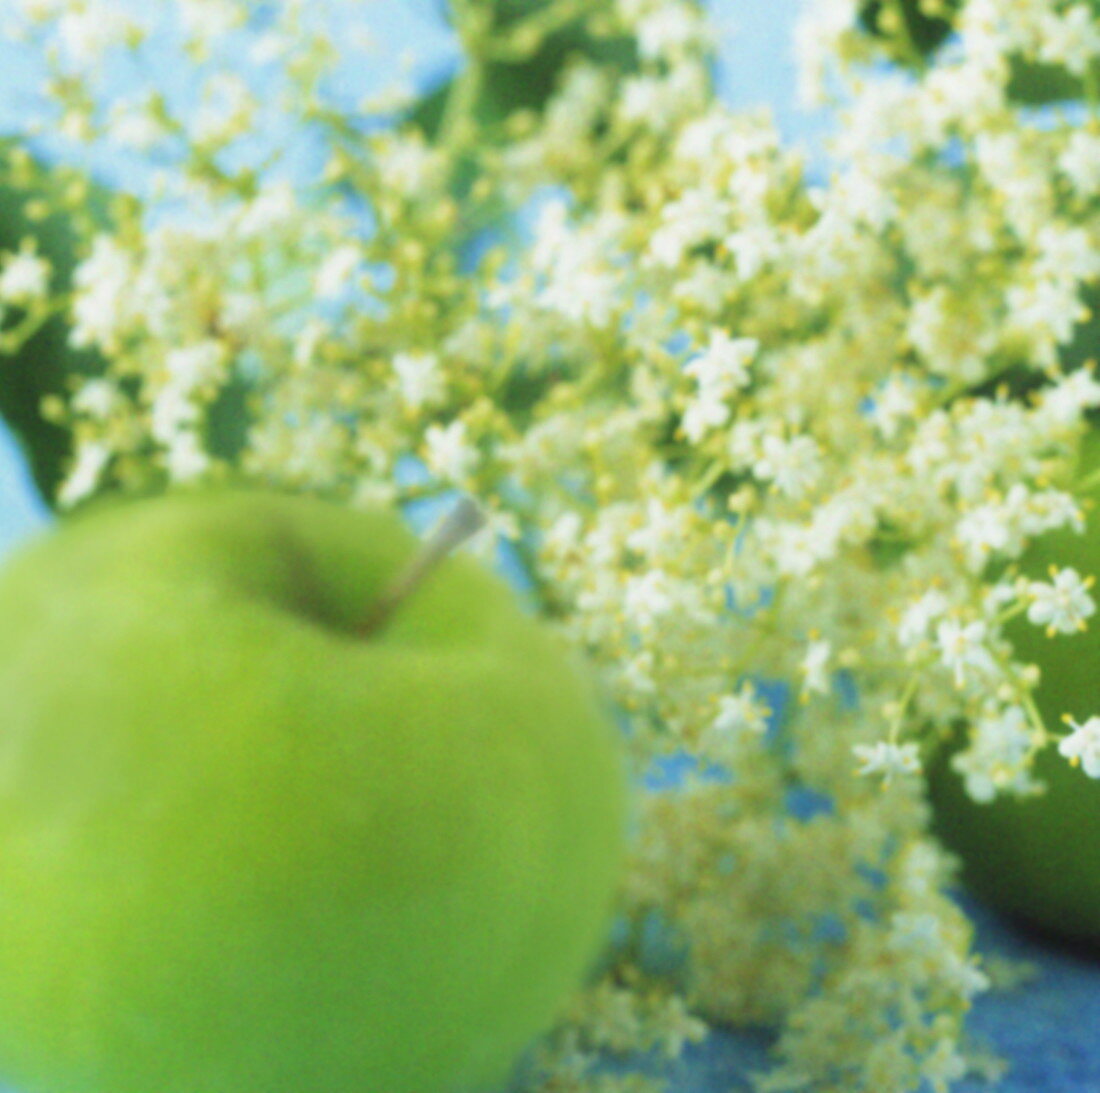 Apple and elderflowers